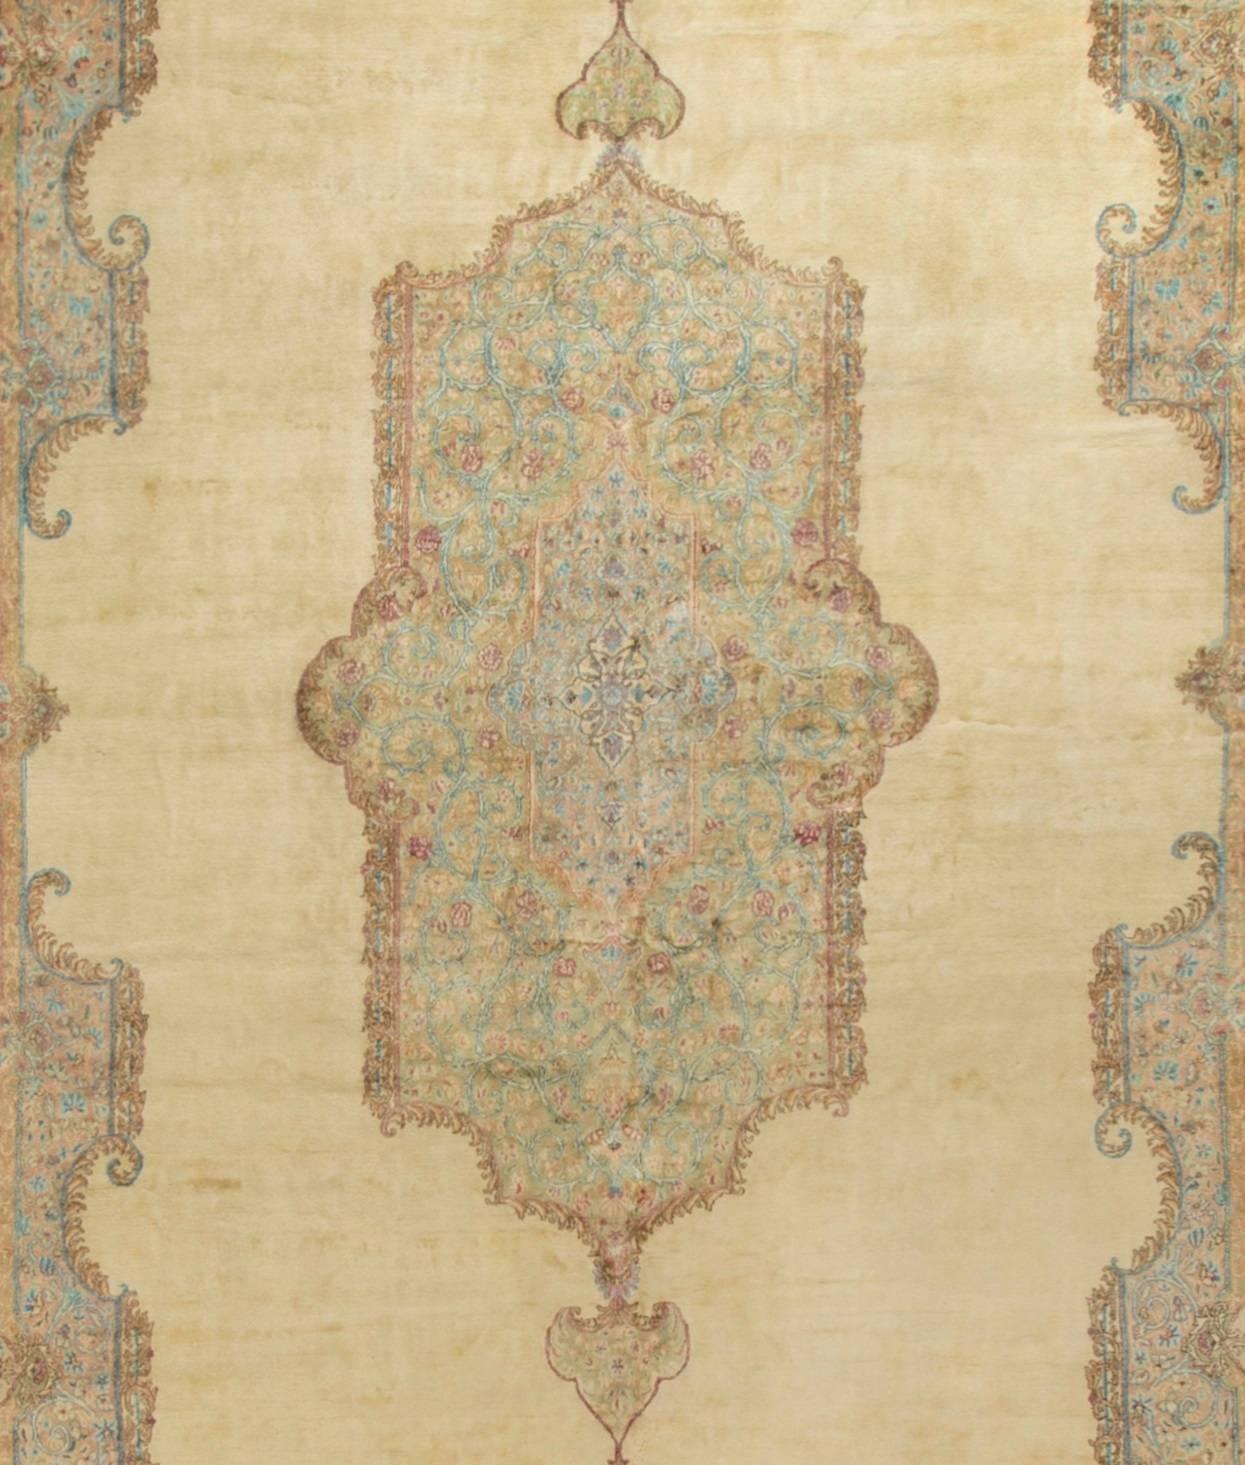 Übergroßer persischer Kirman-Teppich um 1940. Das zart cremefarbene Feld umgibt ein wunderschön detailliertes zentrales Medaillon in sanften Blautönen, das von einer wunderbar geschwungenen Bordüre ergänzt wird. Gewebt in der persischen Stadt Kirman